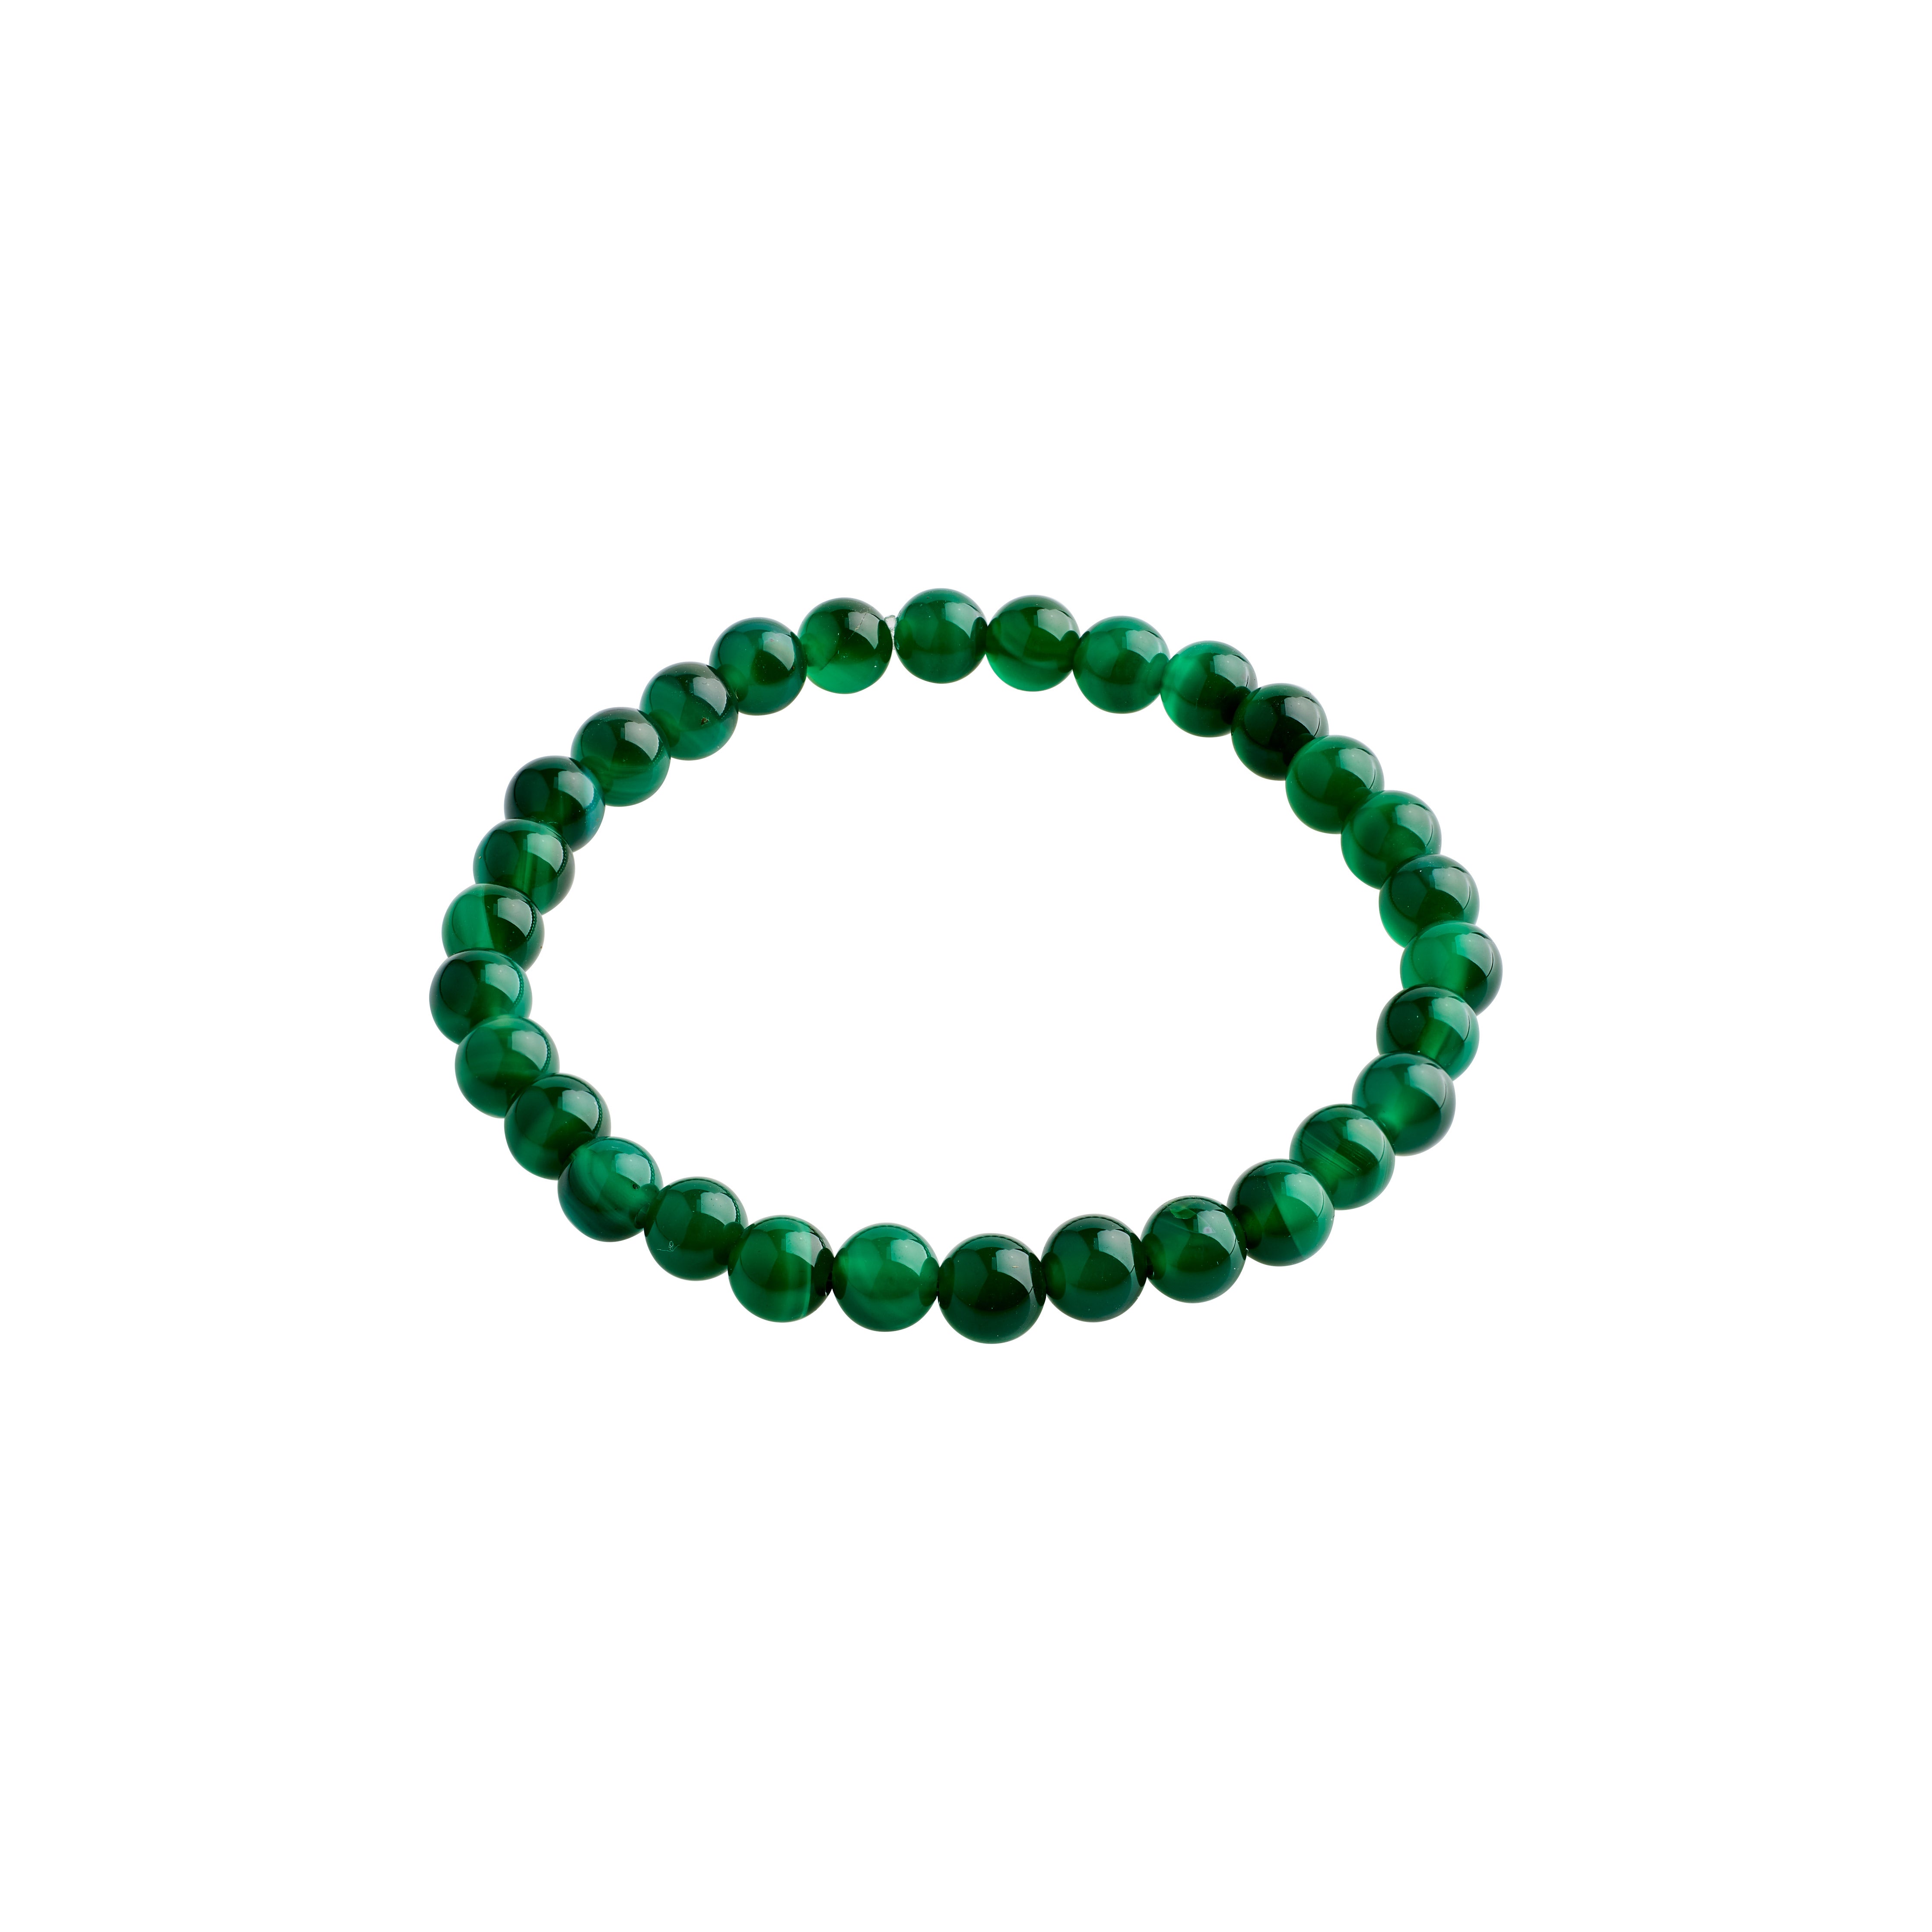 POWERSTONE bracelet, green agate